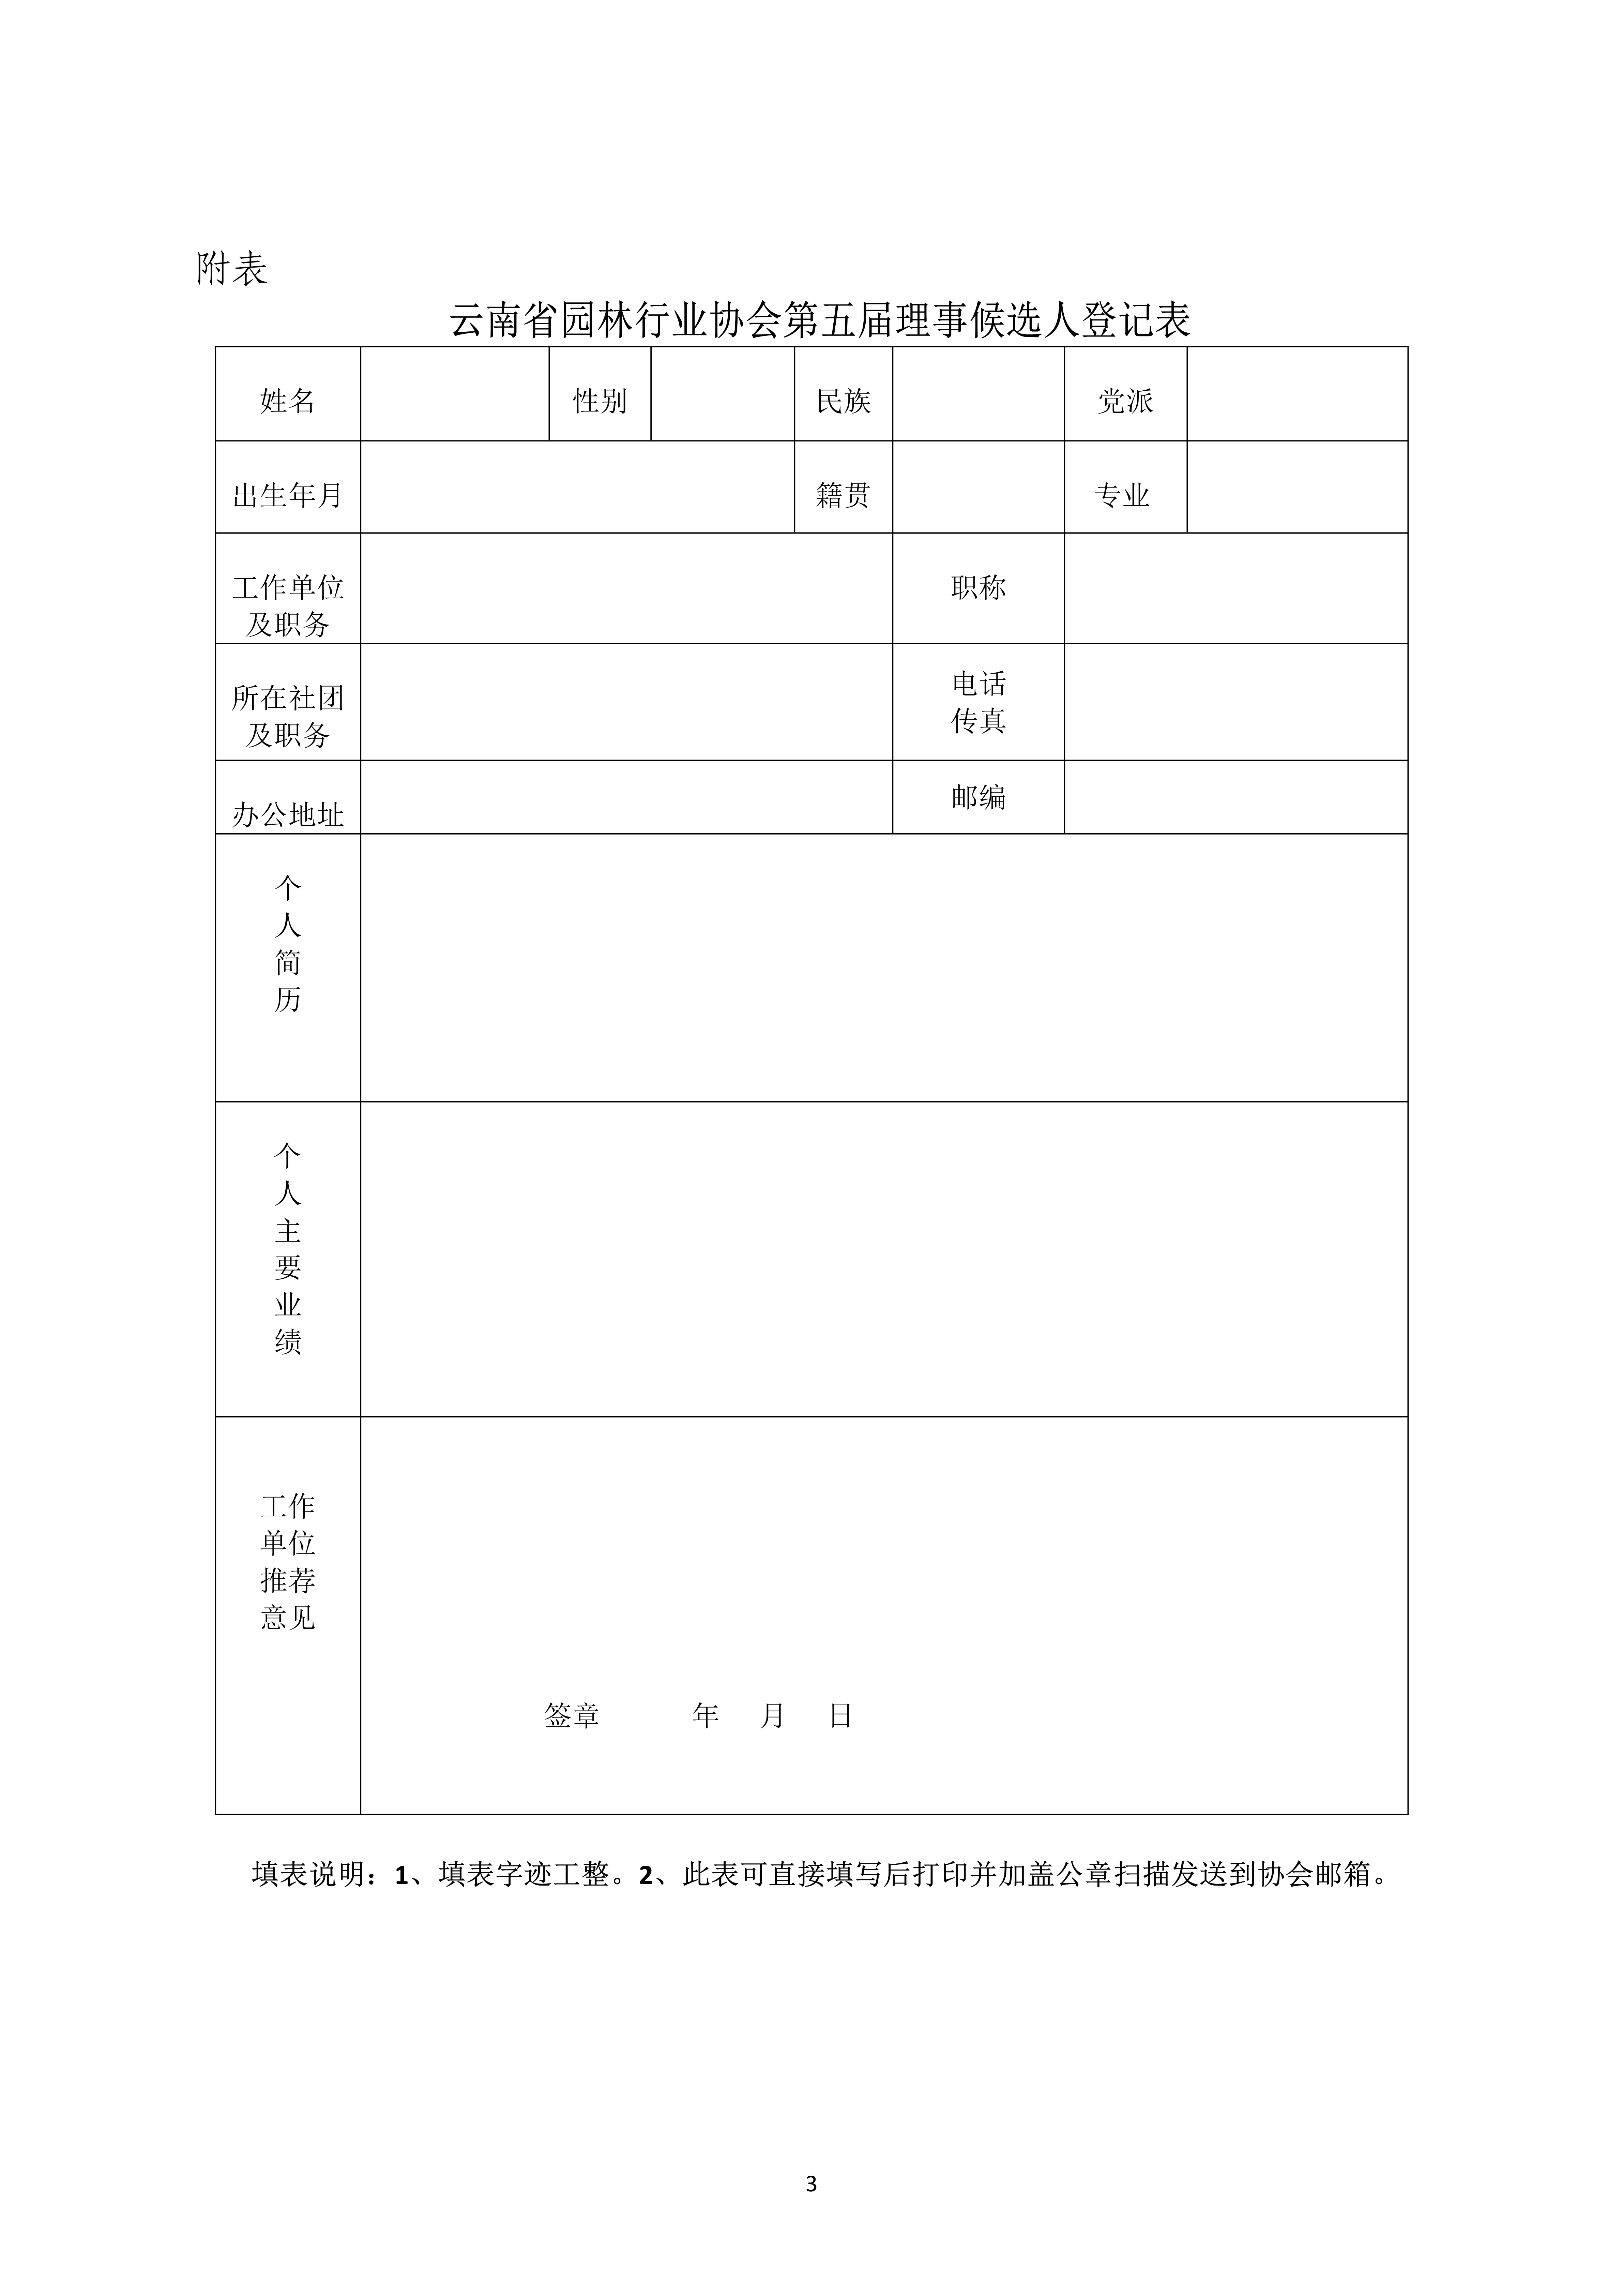 九州官方网站(中国)有限公司官网关于推选第五届理事候选人的通知_3.jpg